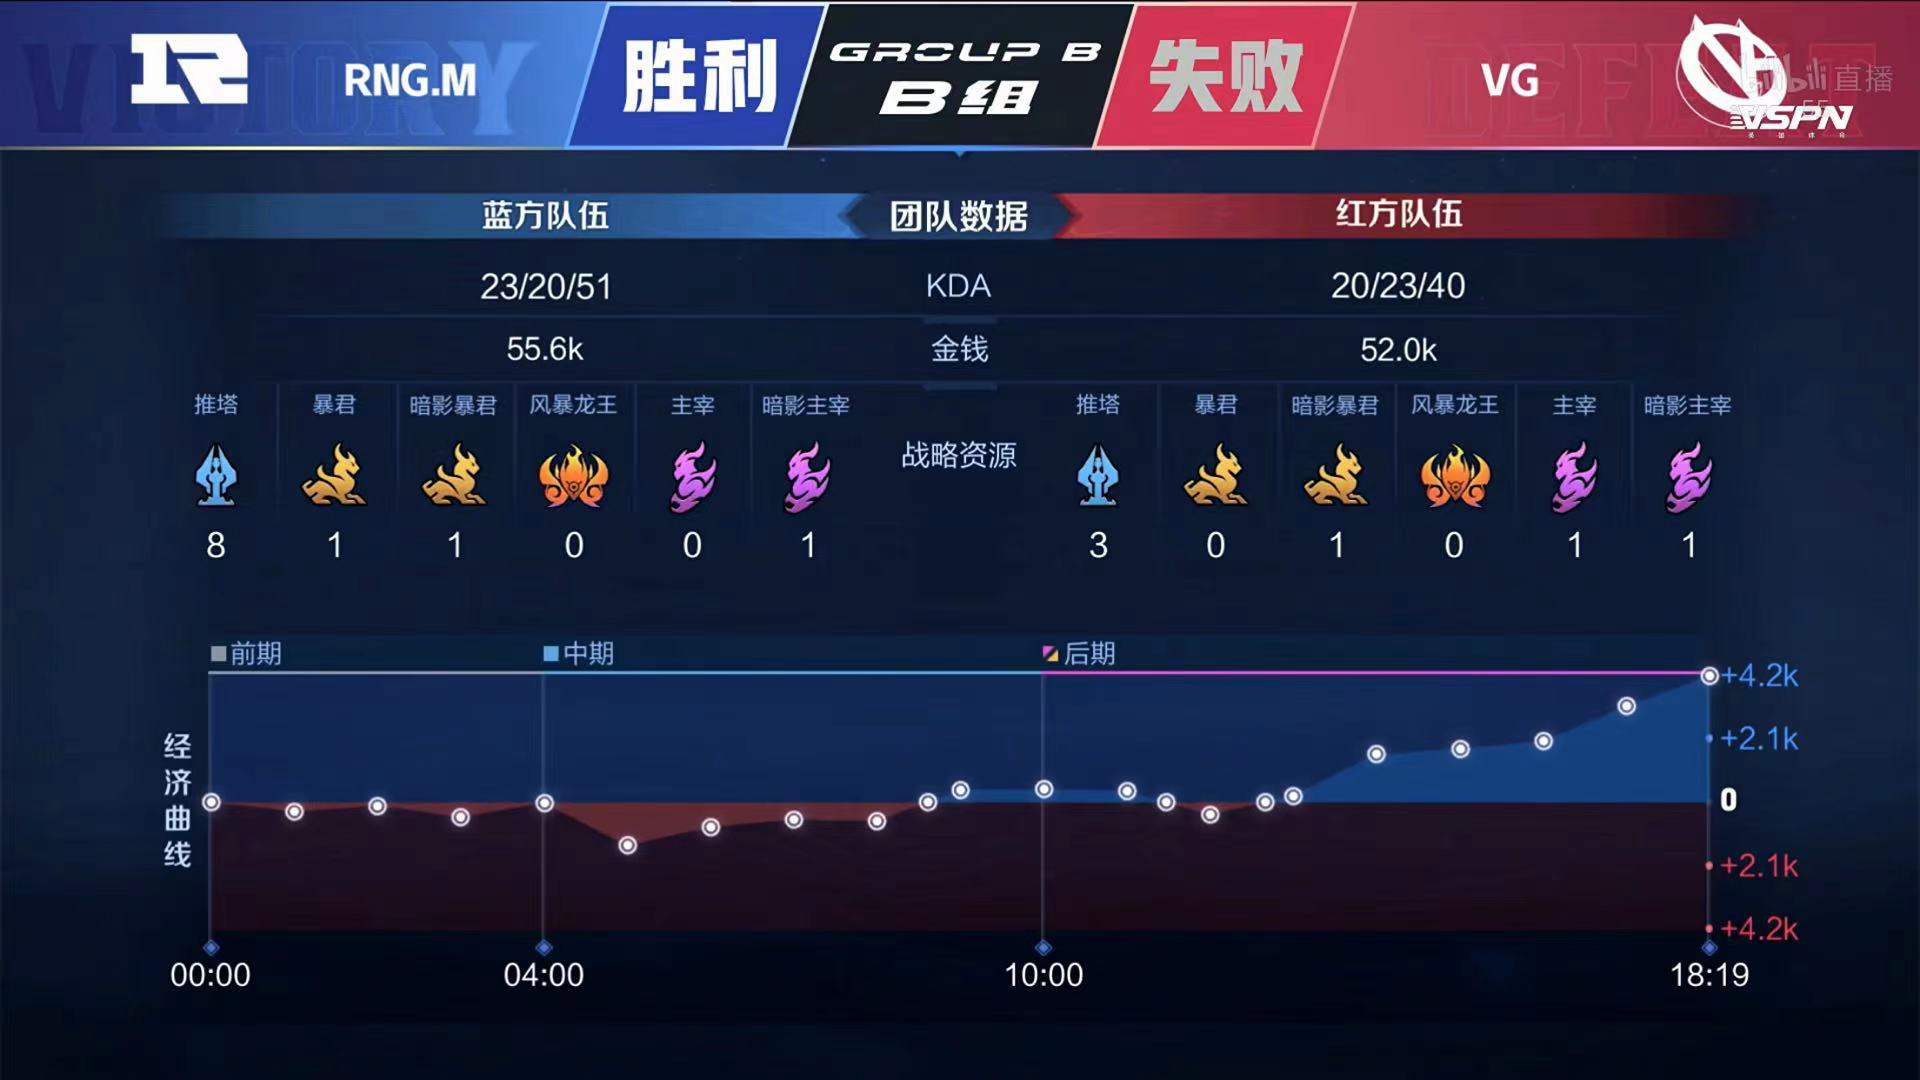 [战报] 762马超三连决胜 VG战胜RNG.M 取得两连胜！